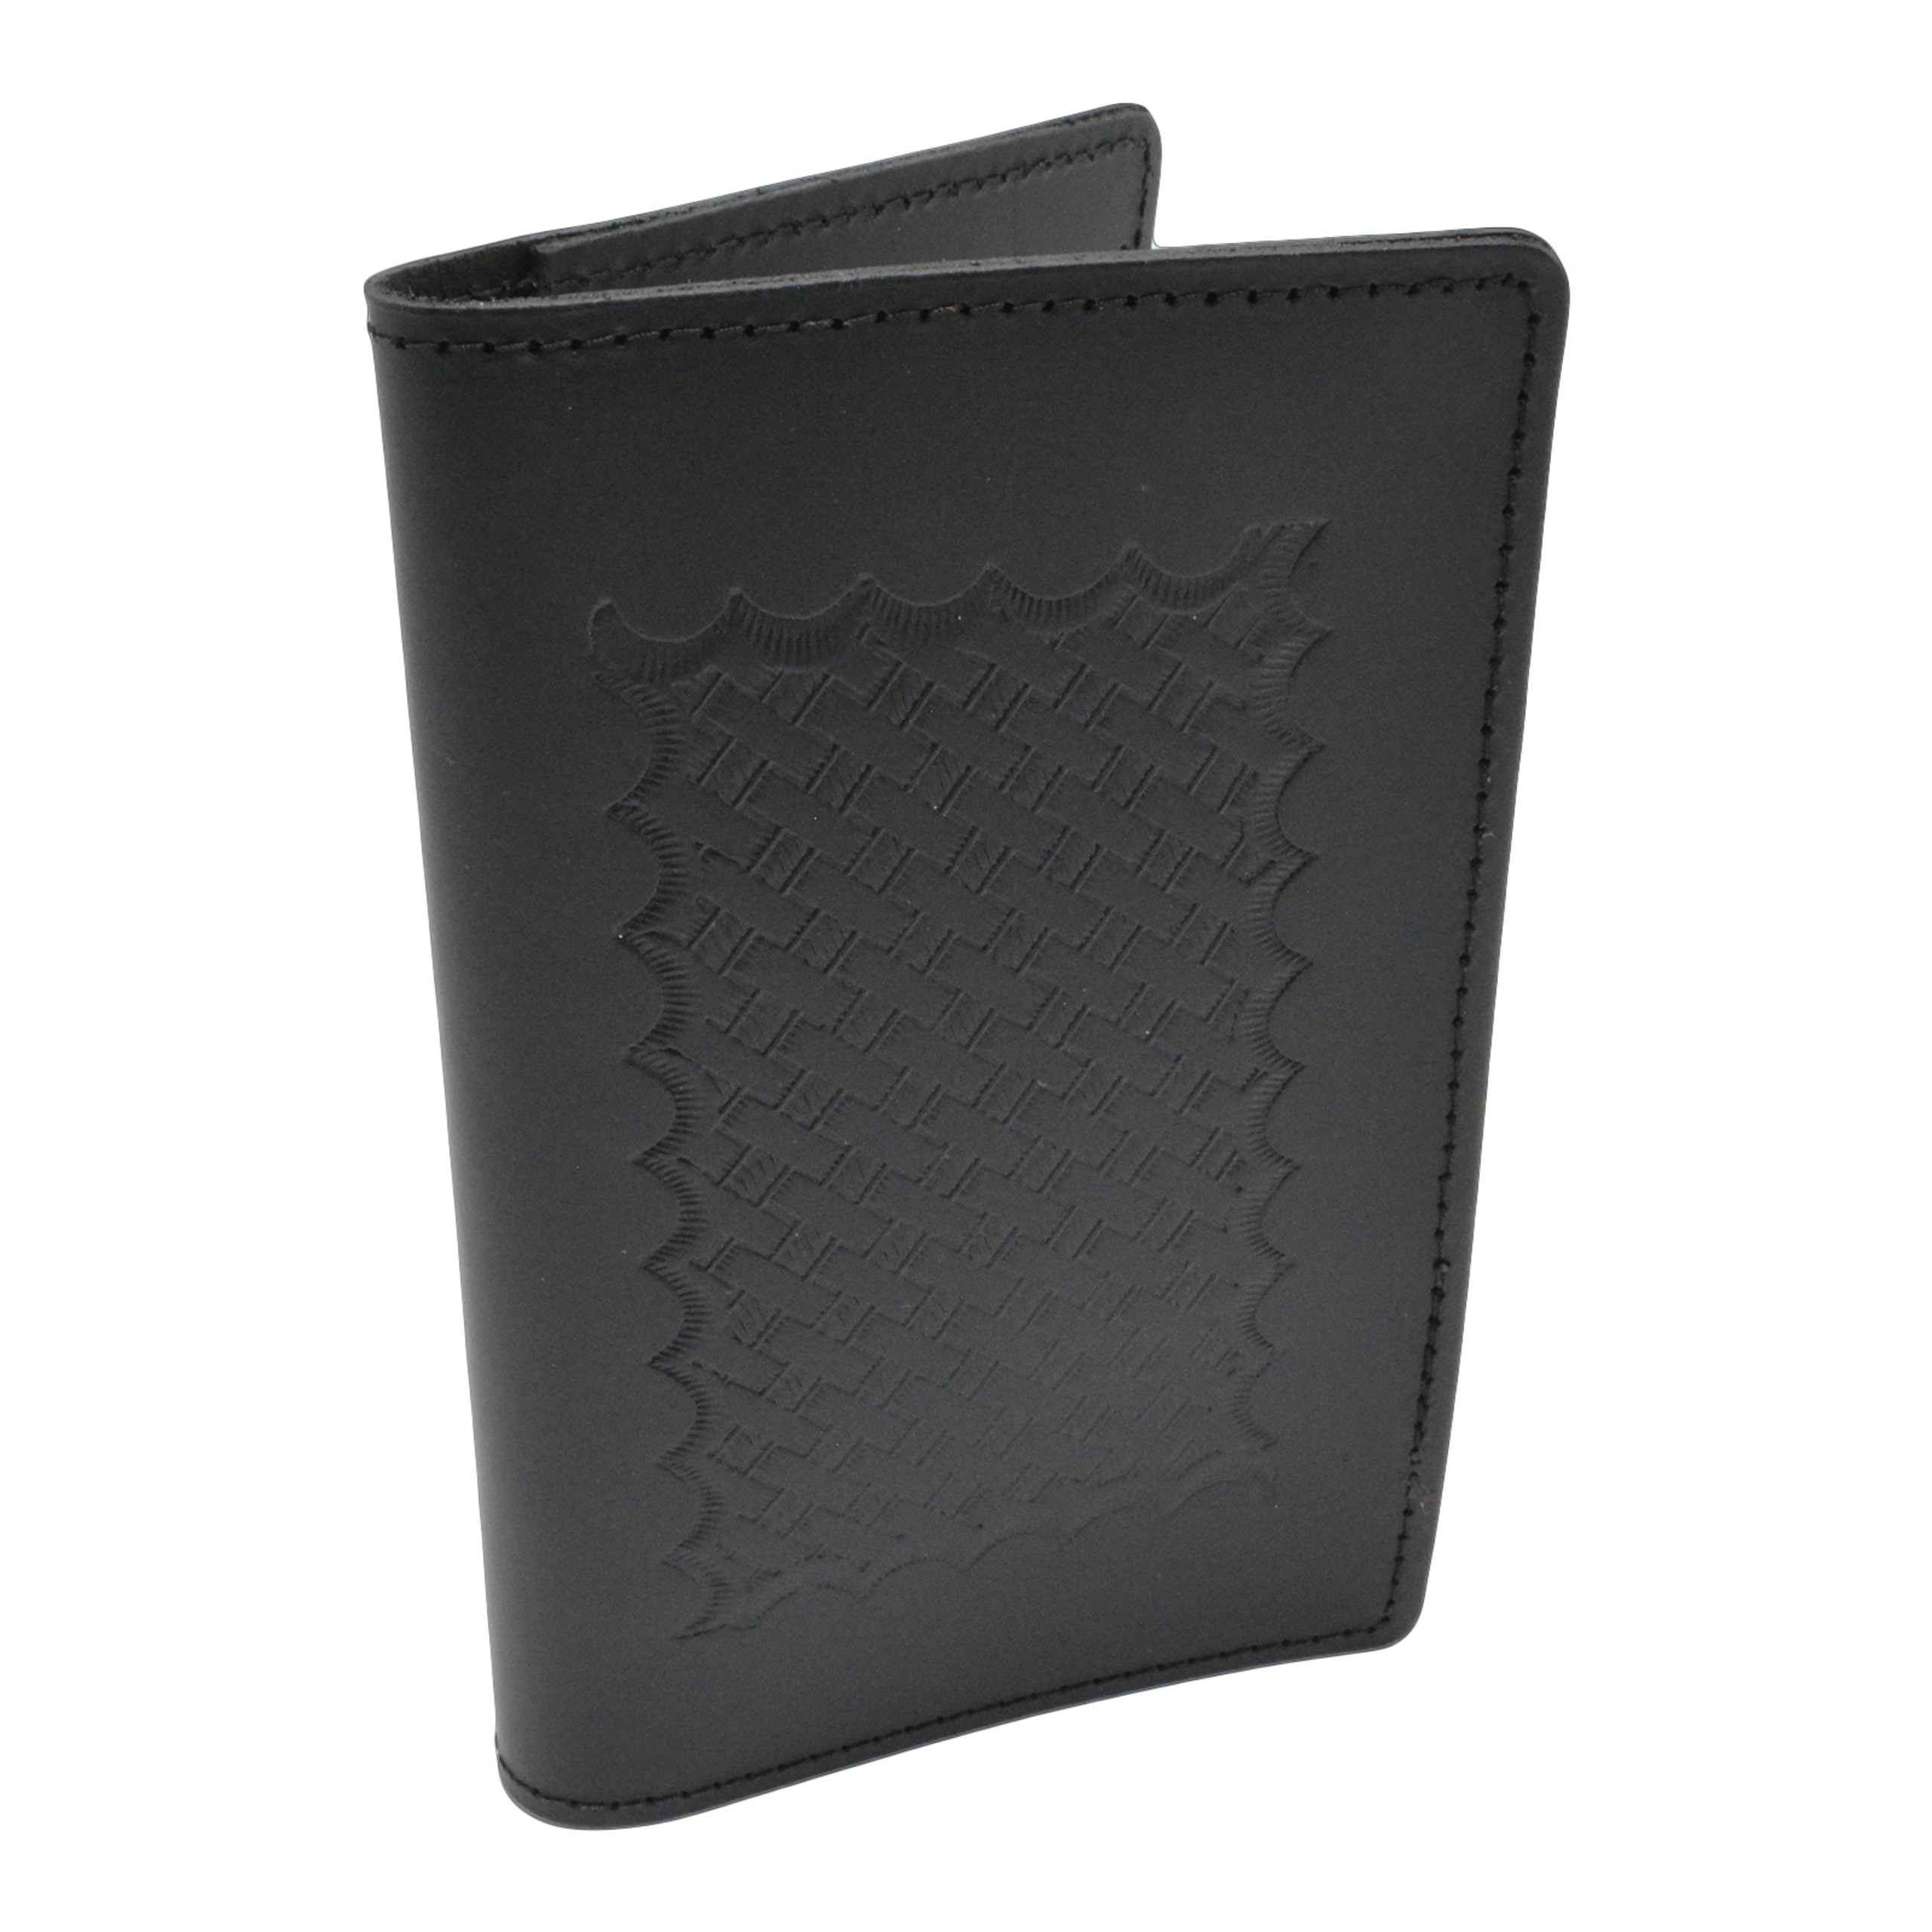 Leather Pocket Calendar Cover - Pocket Planner Holder |NYDOC Leather ...